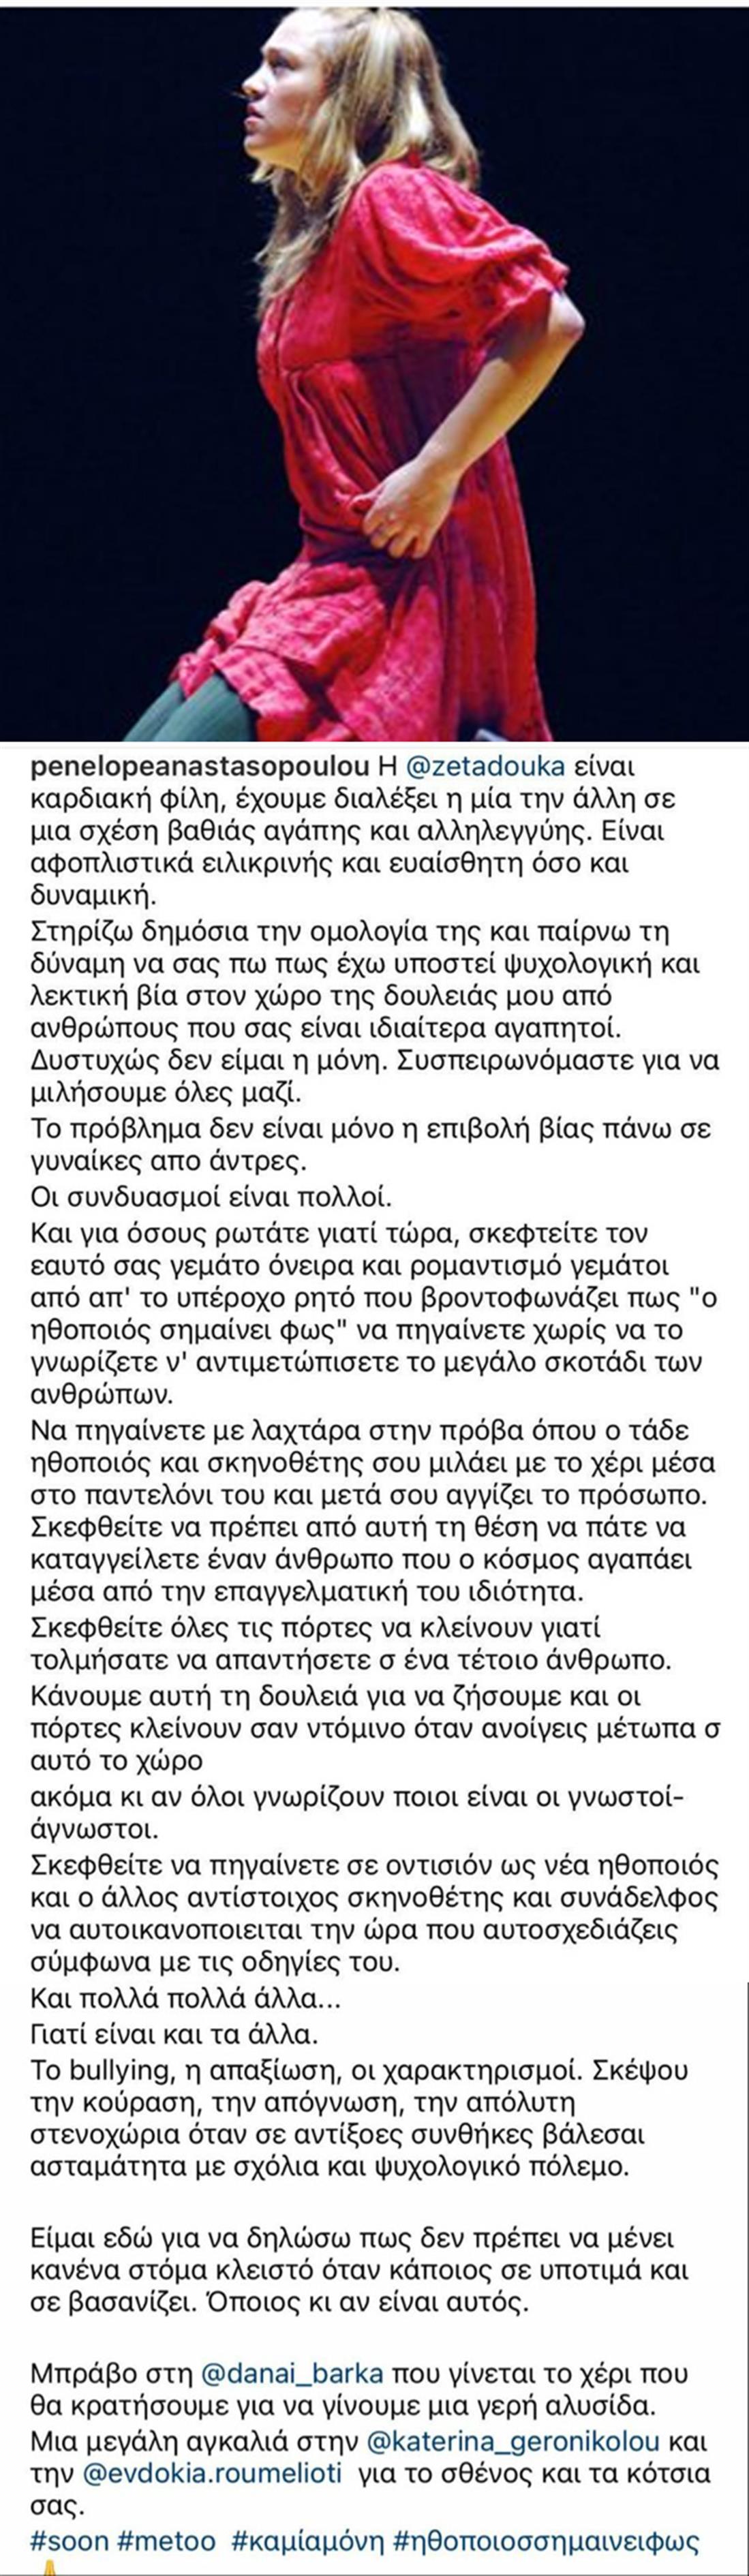 Πηνελόπη Αναστασοπούλου - Μαρτυρία - instagram